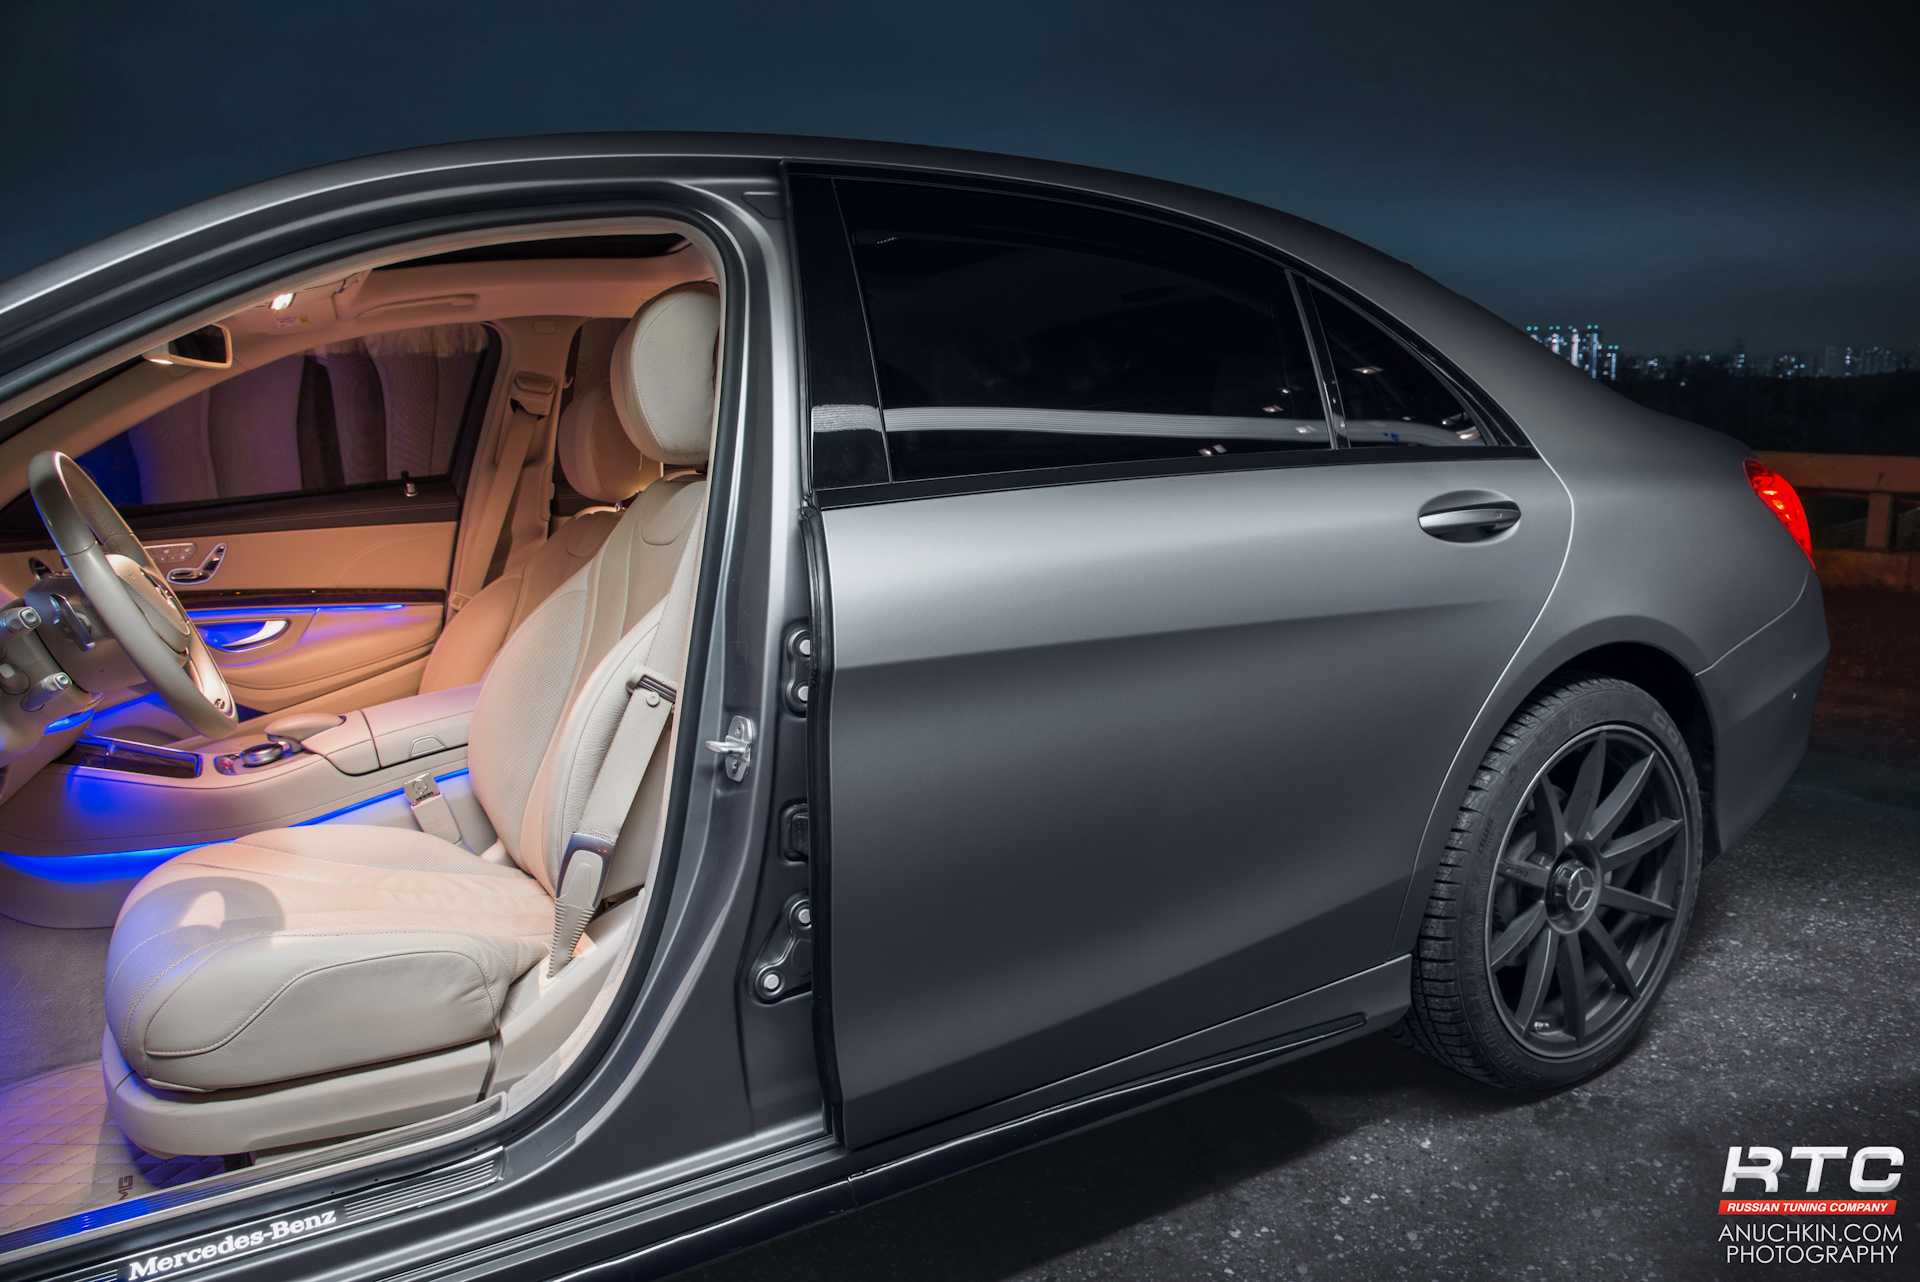 Mercedes-benz s-klasse: поколения, кузова по годам, история модели и года выпуска, рестайлинг, характеристики, габариты, фото - carsweek